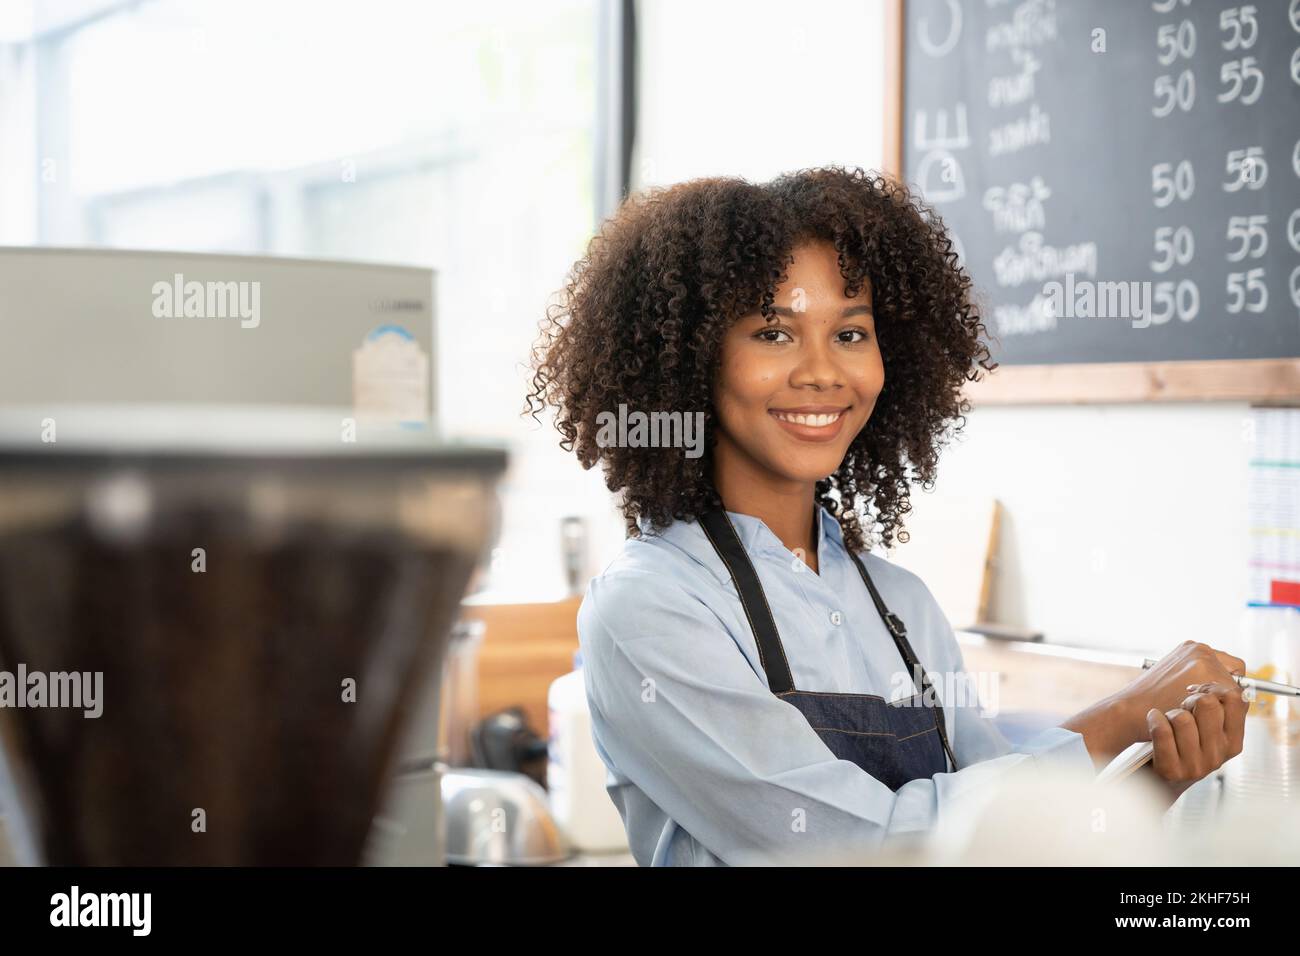 Porträt einer lächelnden jungen afroamerikanischen Kellnerin mit Schürze, die bereit ist, die Bestellung aufzunehmen Stockfoto